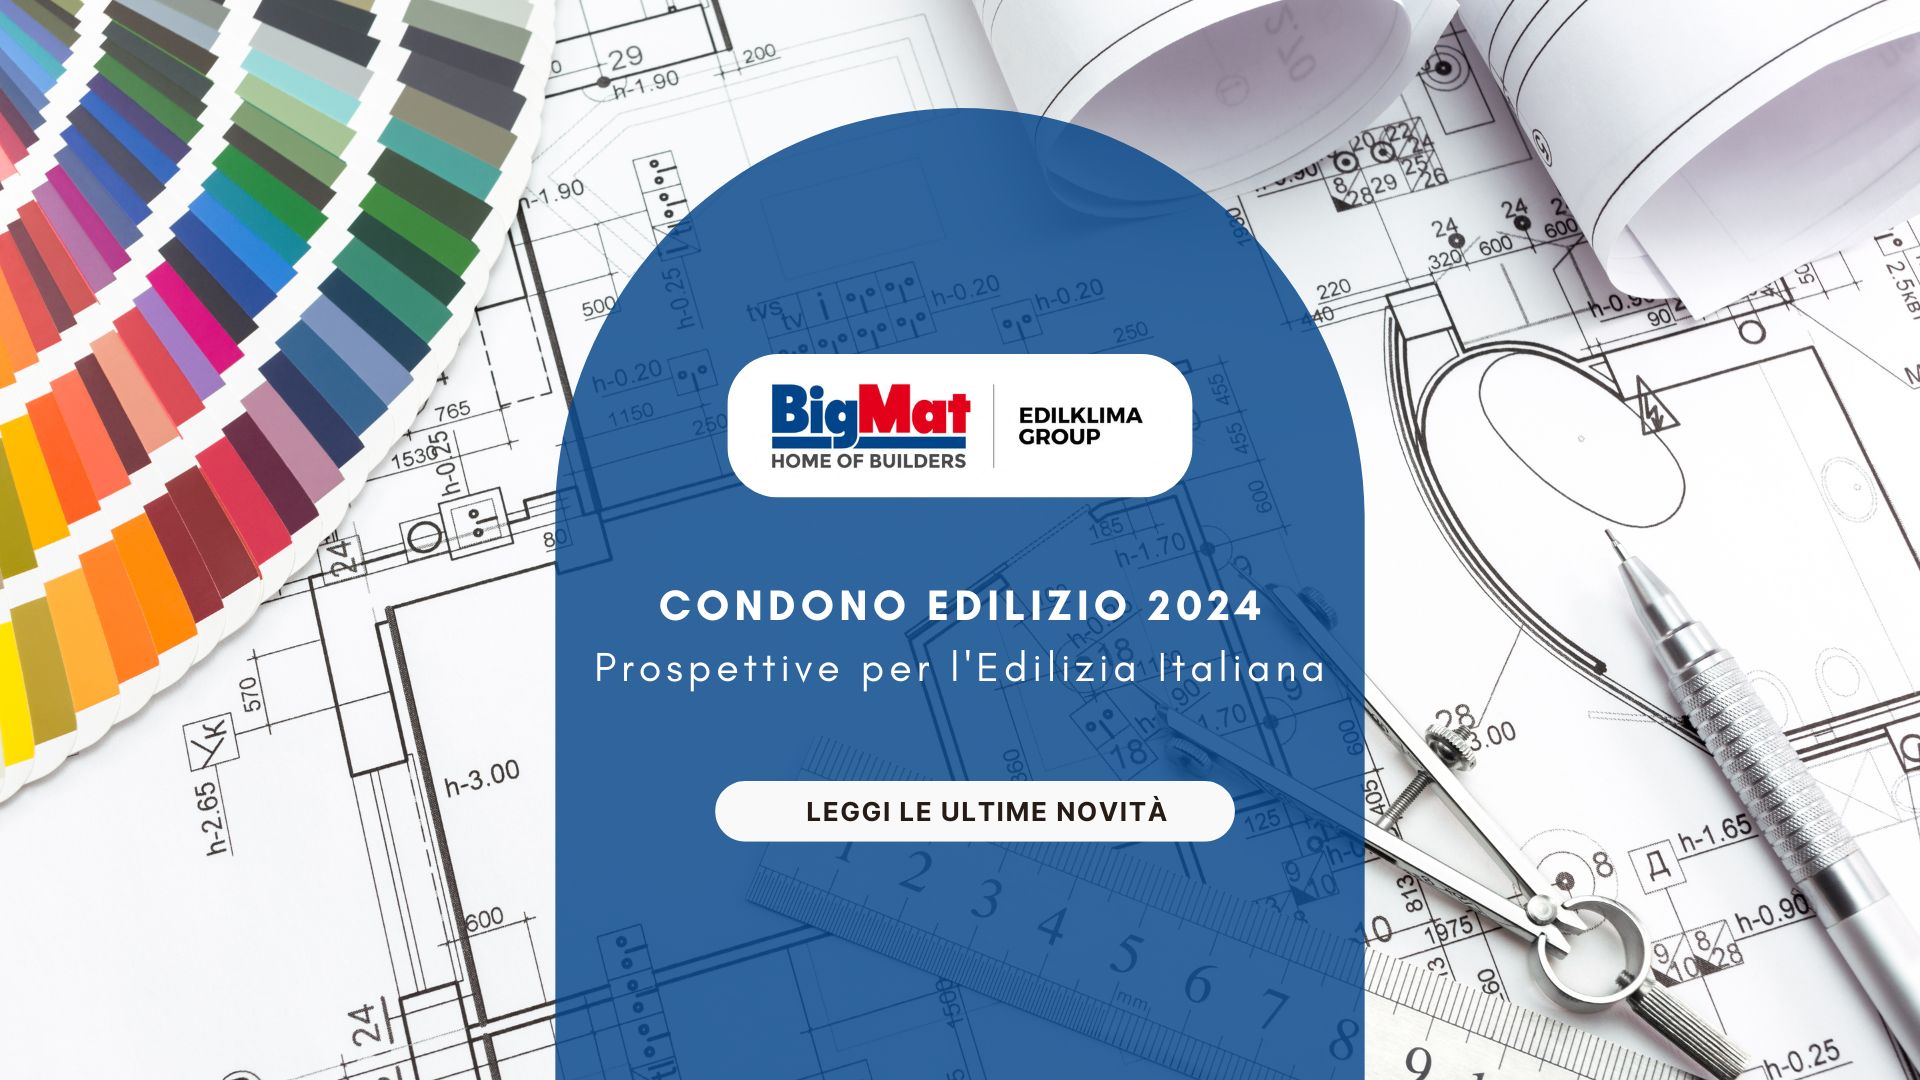 Condono edilizio 2024 prospettive per l'edilizia italiana -cover